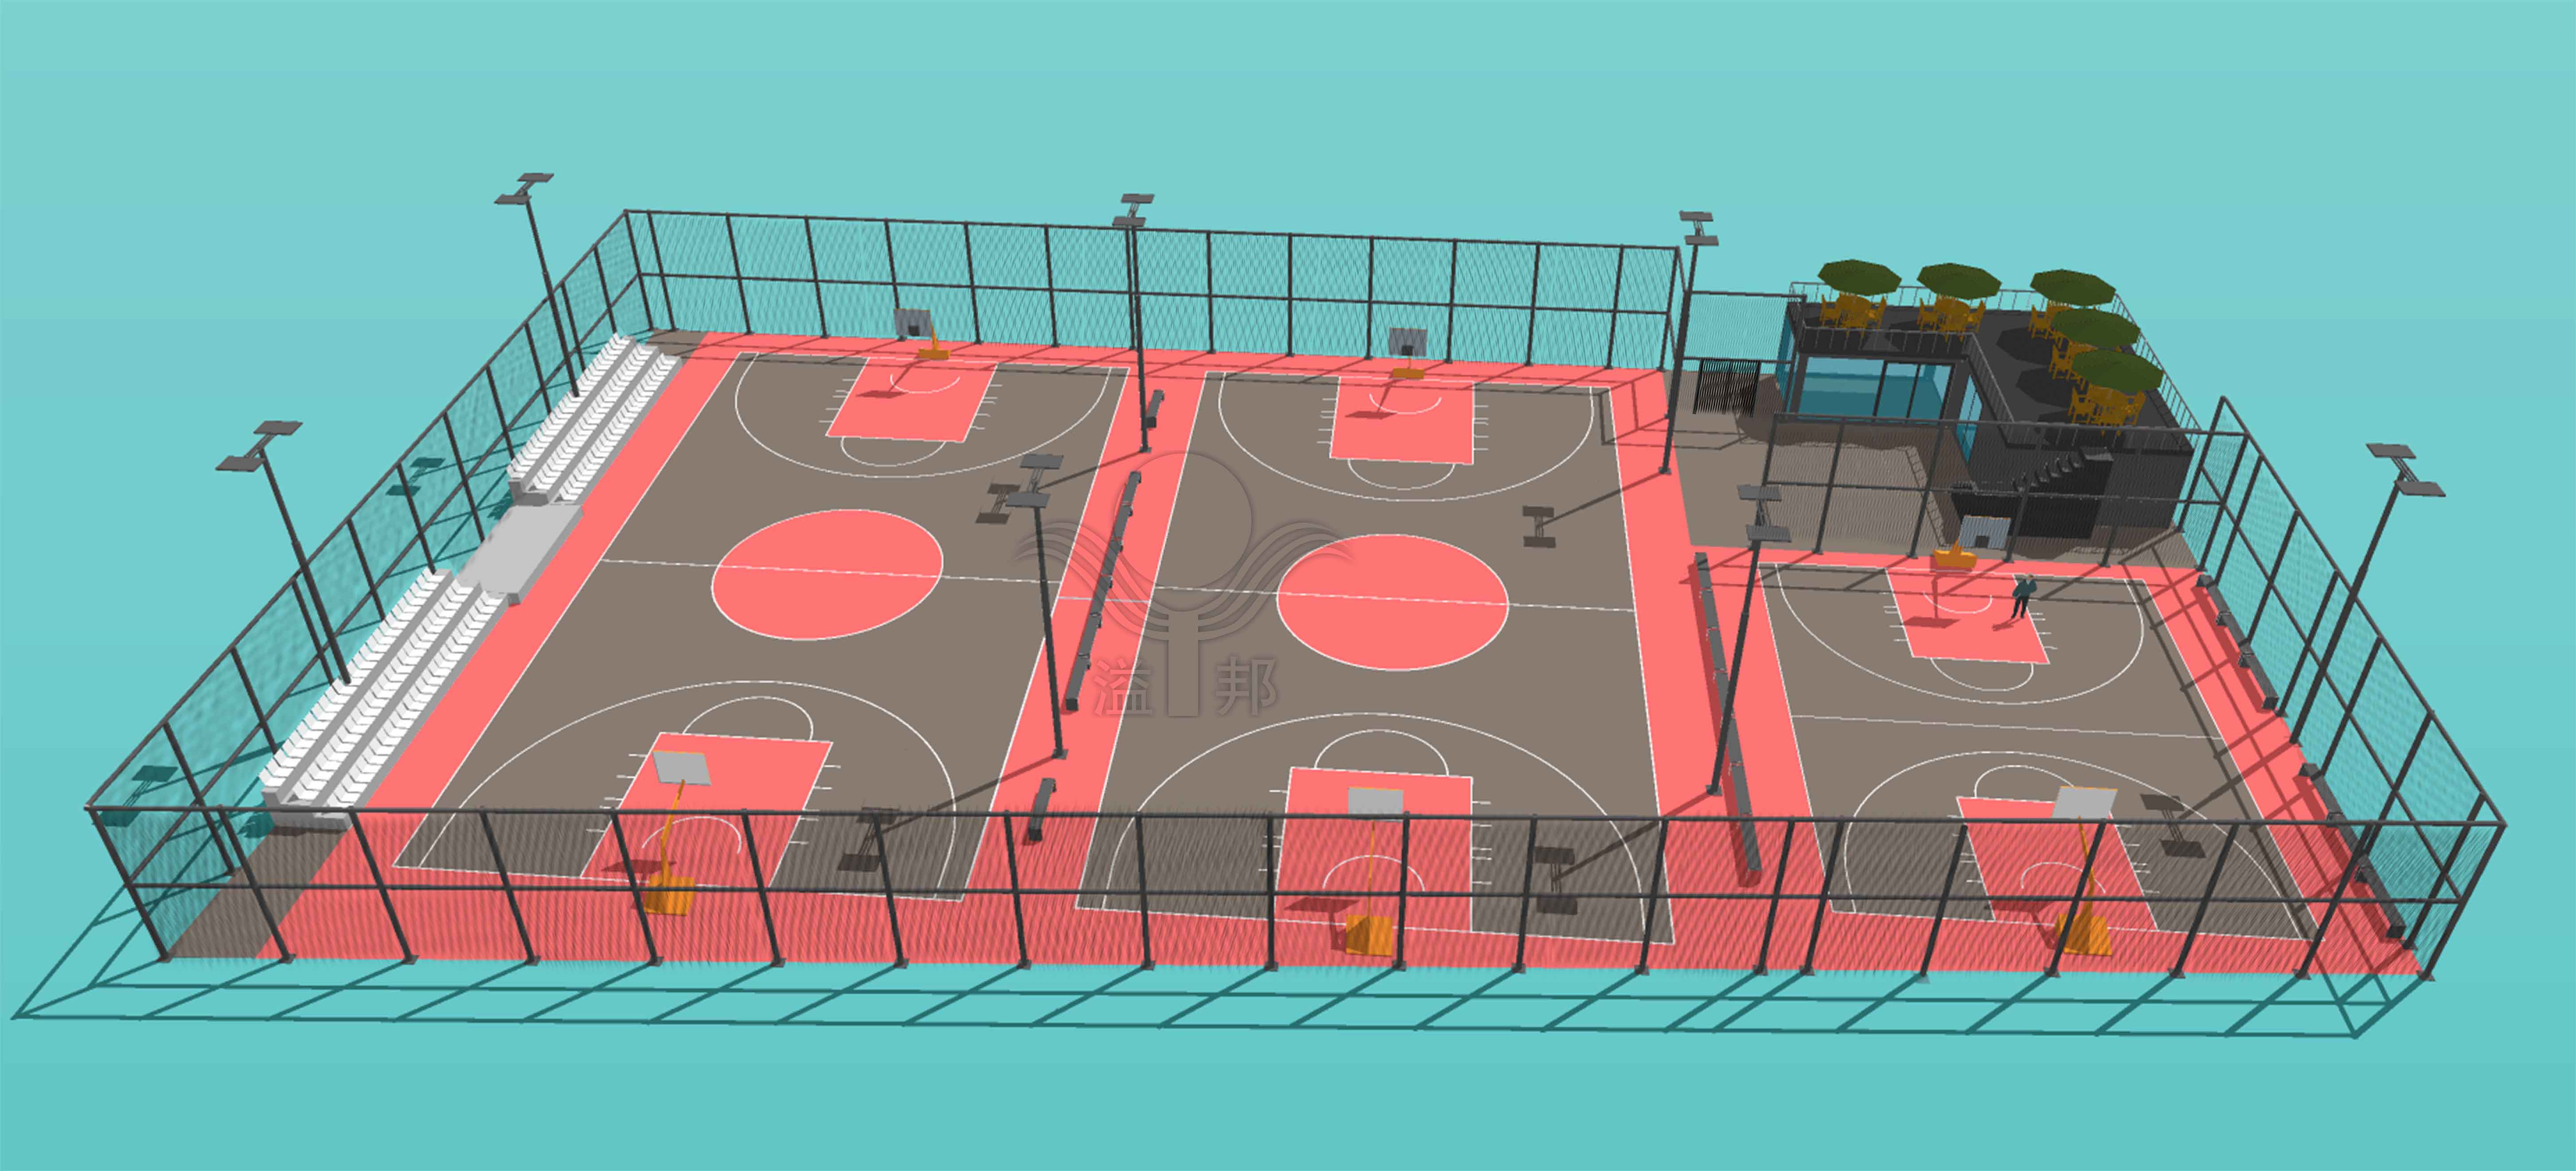 屋顶篮球场